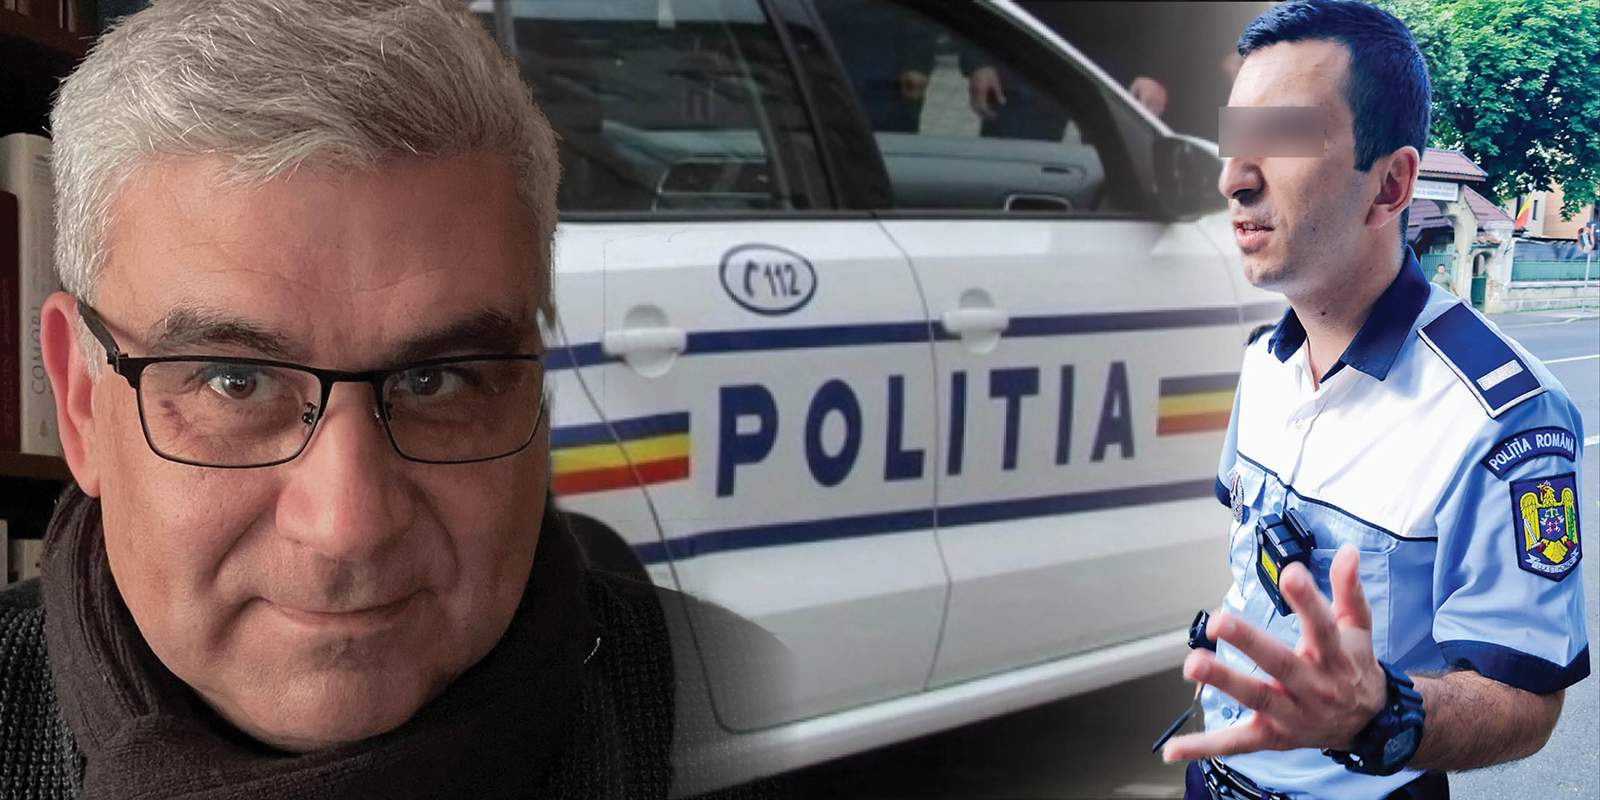 Fost ambasador al României, scandal penal cu Poliția Rutieră / Agenții, acuzați că i-au terorizat nevasta!